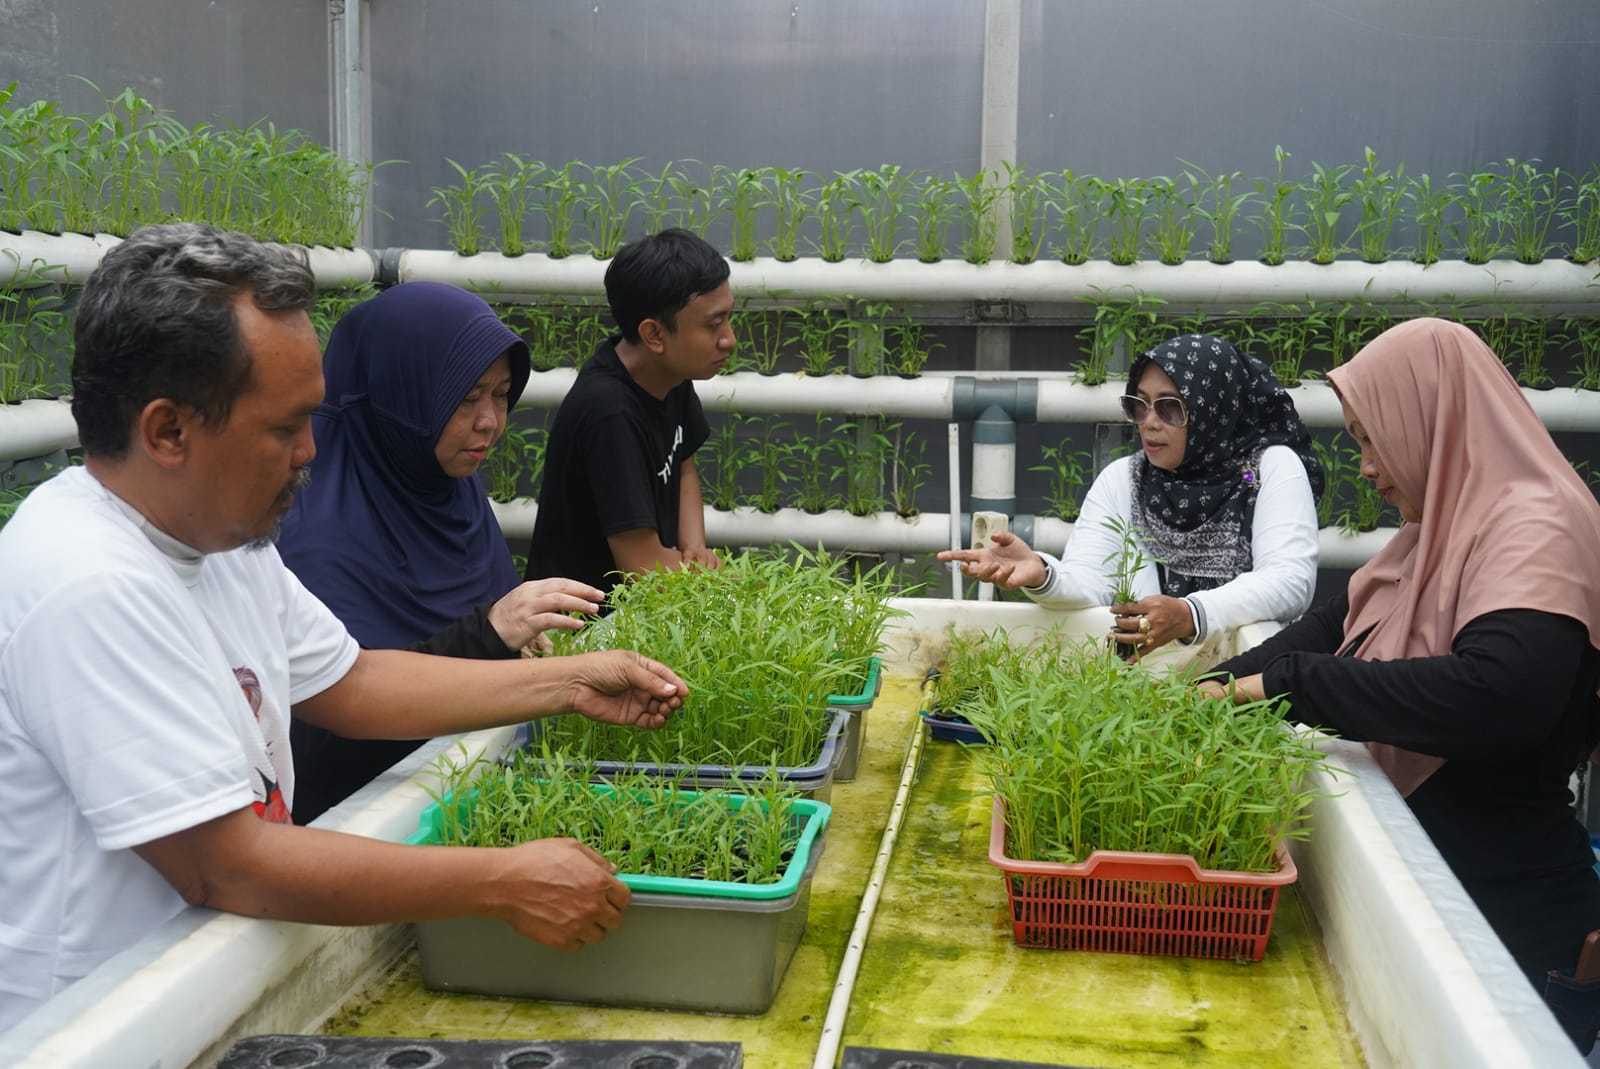 Dukung Inovasi Masyarakat, OMG Bantu Renovasi Greenhouse di Pisangan Timur 1